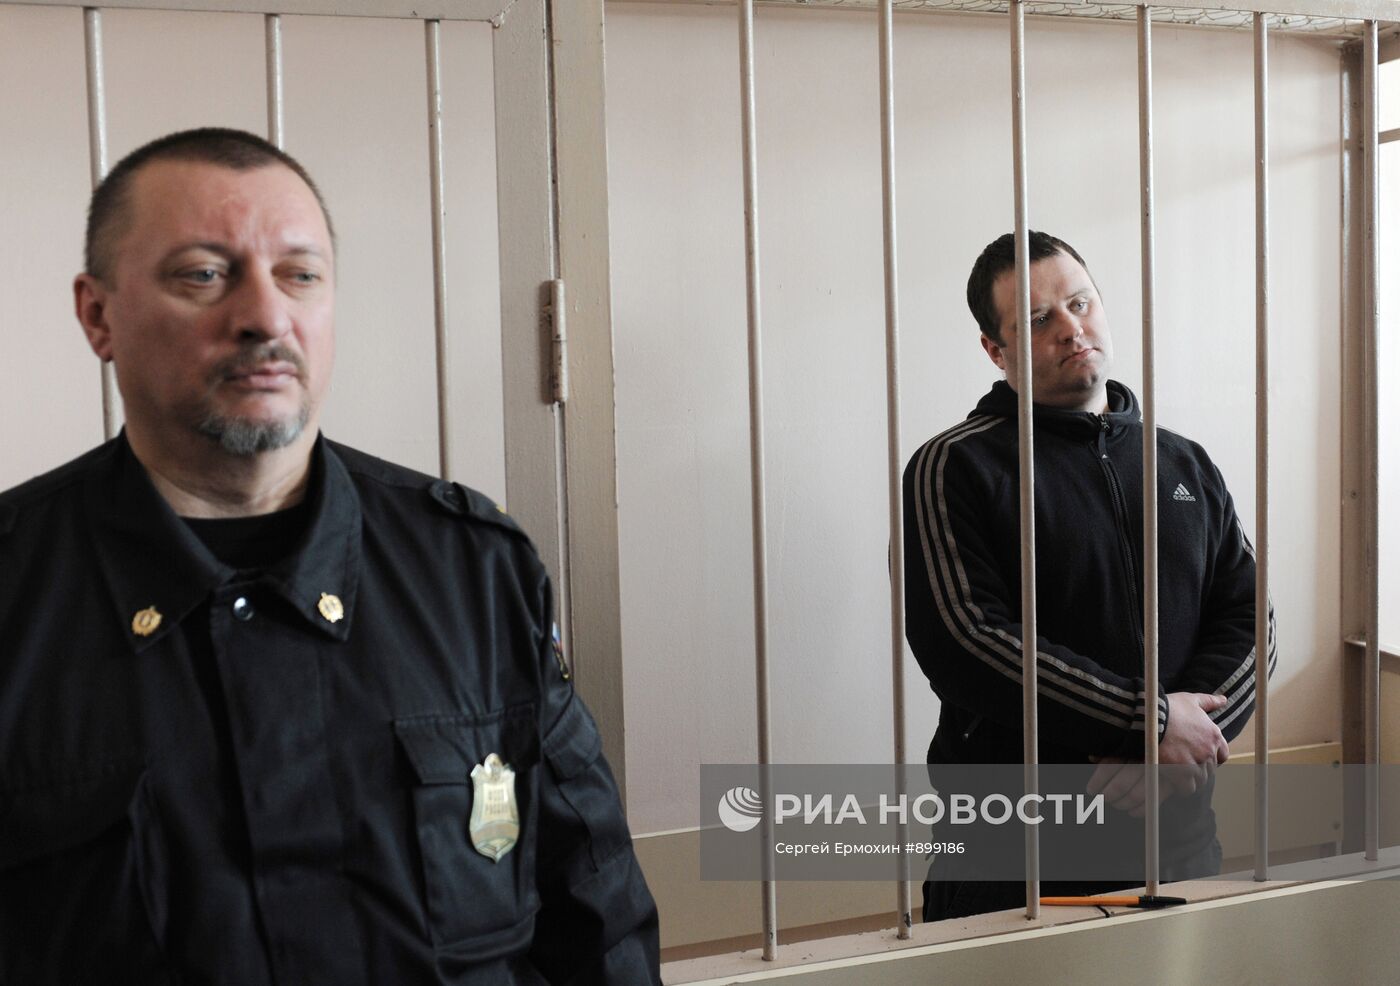 Вынесение приговора бывшему сотруднику милиции Андрею Петрову